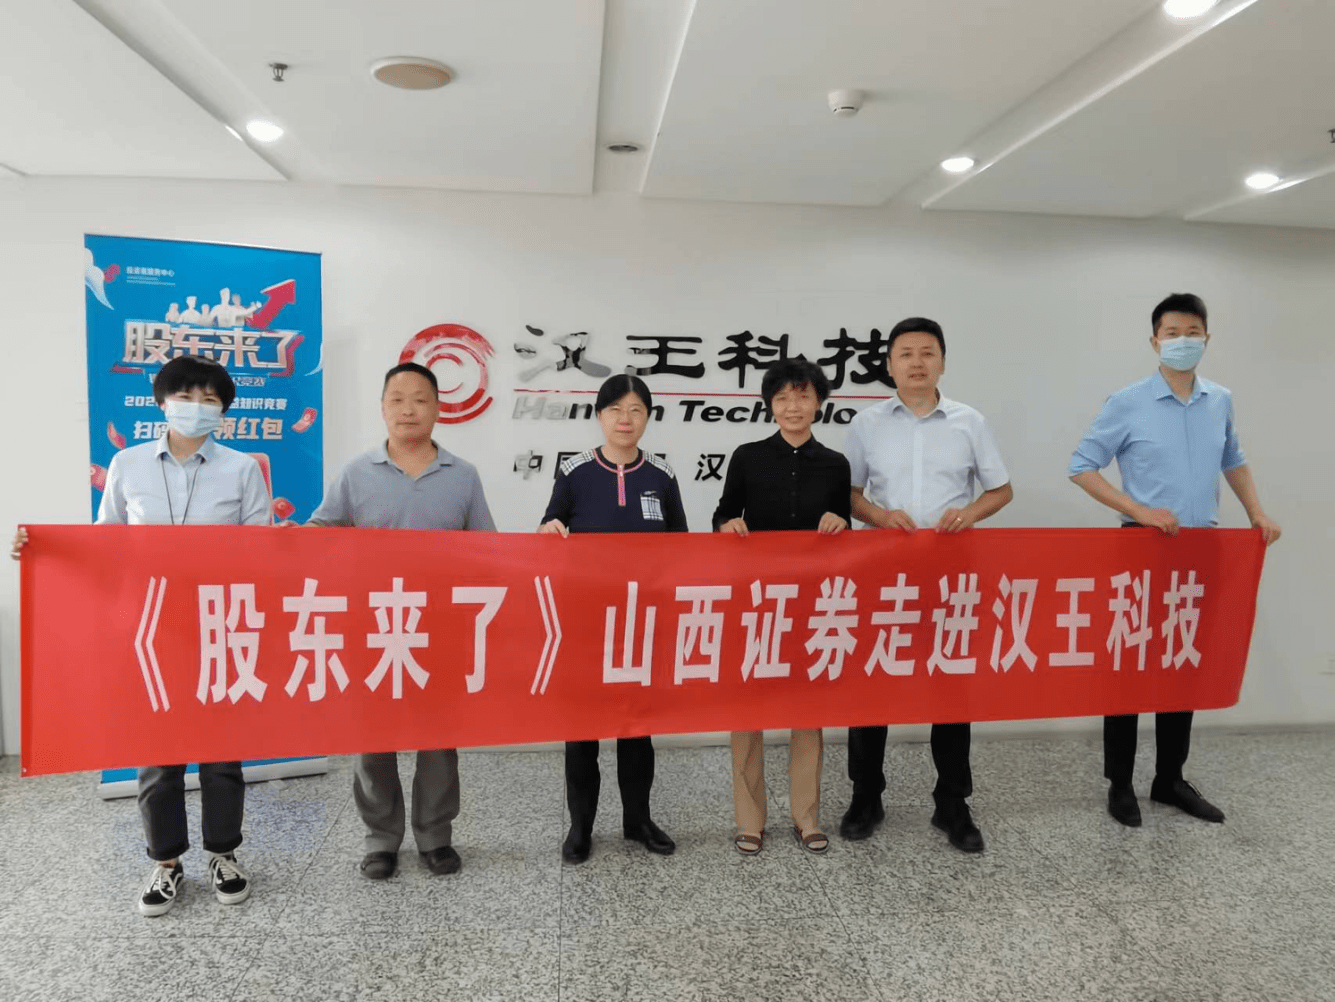 6月16日,山西证券北京分公司北京太平庄营业部工作组走进人工智能上市